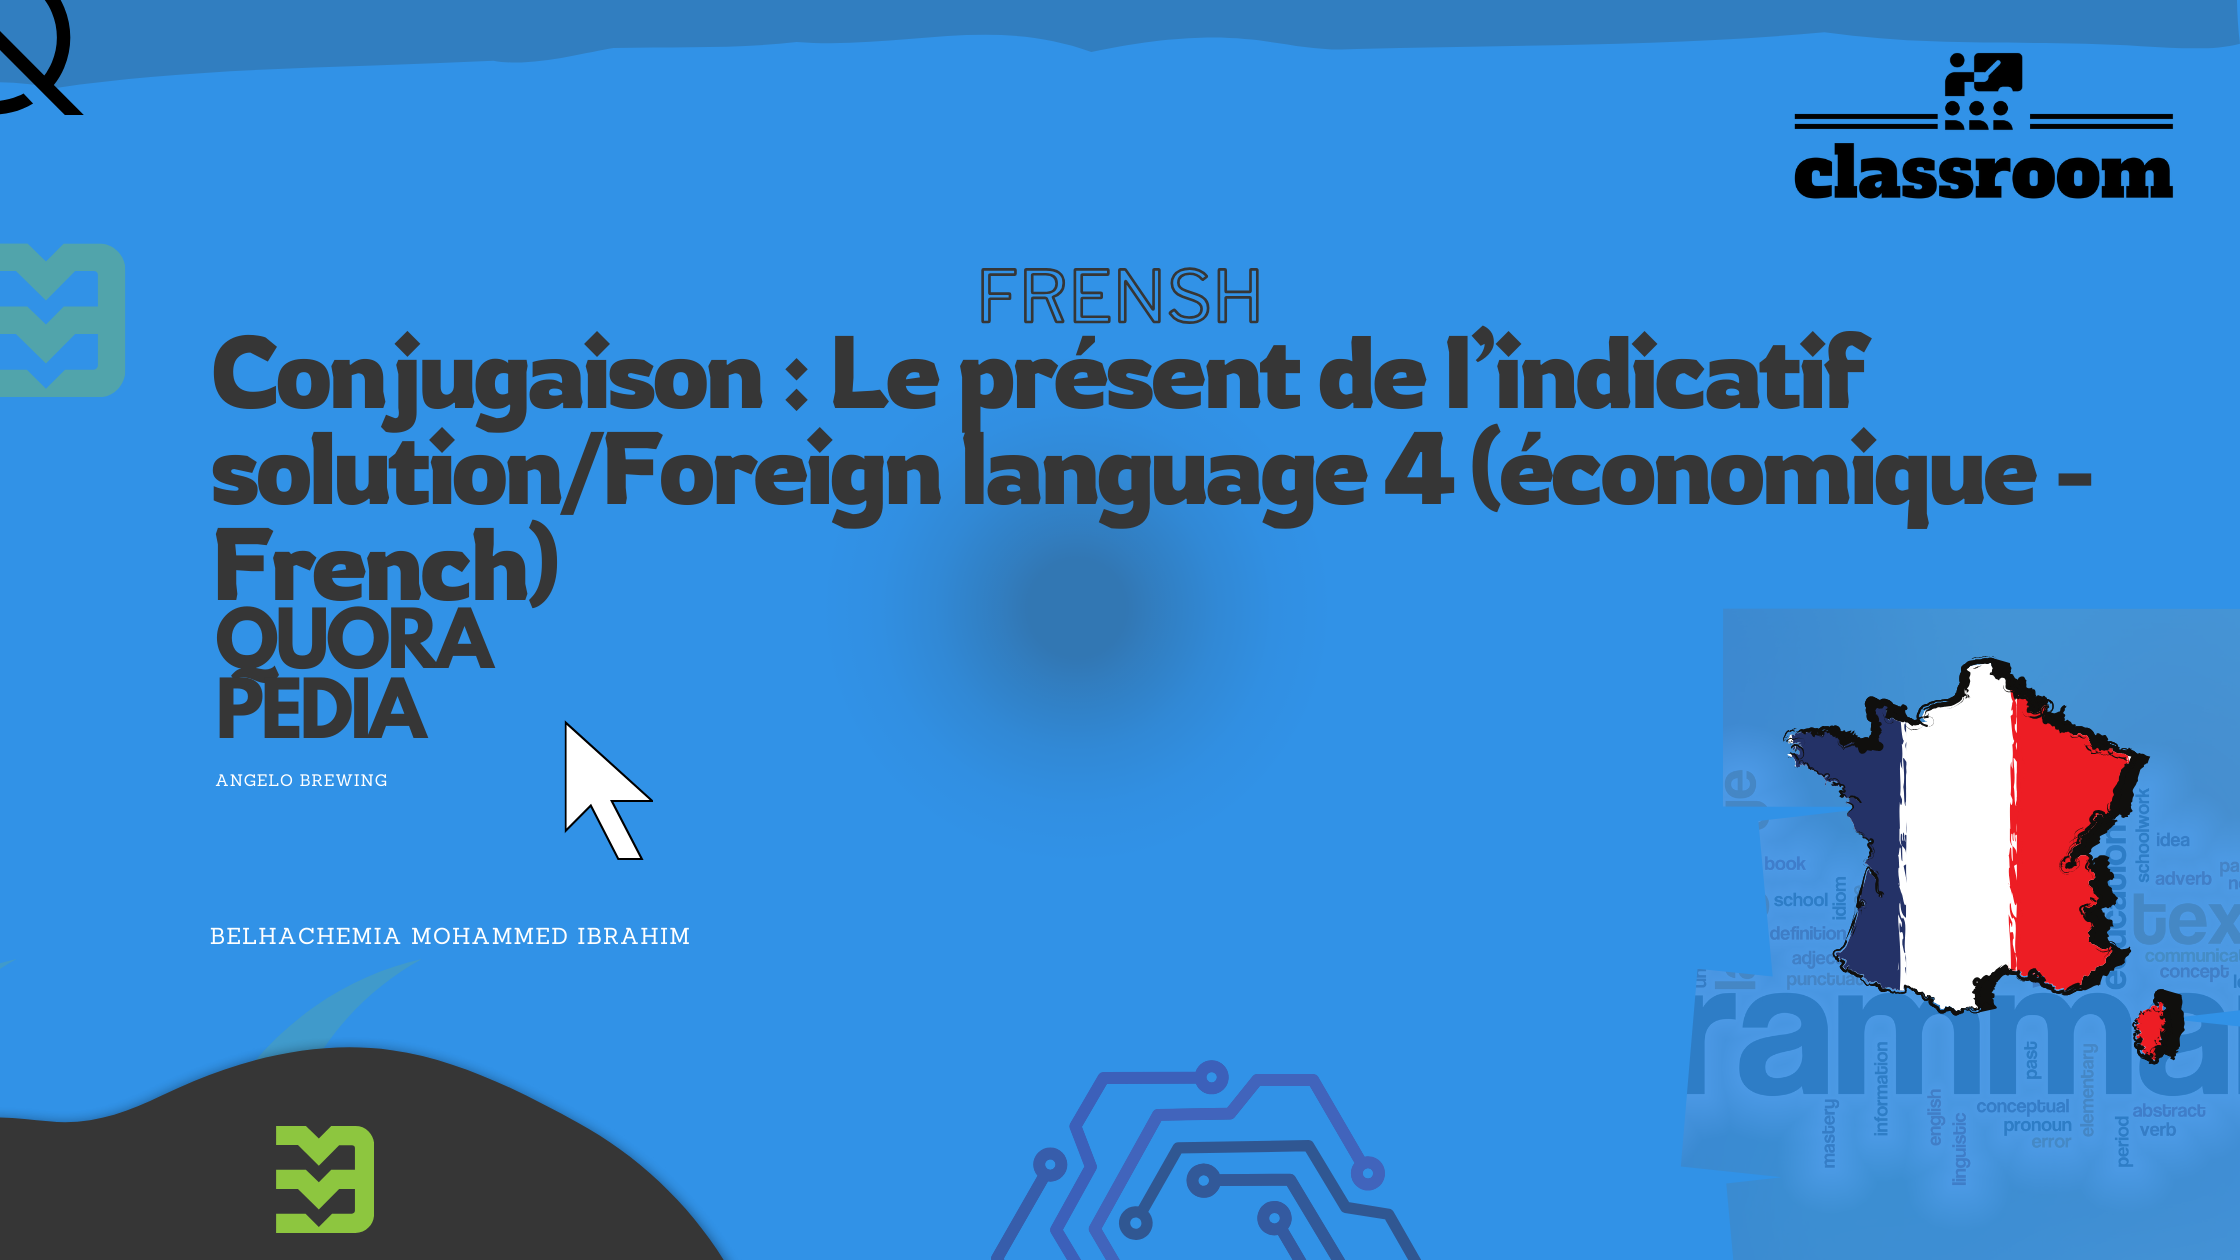 Conjugaison : Le présent de l’indicatif solution/Foreign language 4 (économique - French)